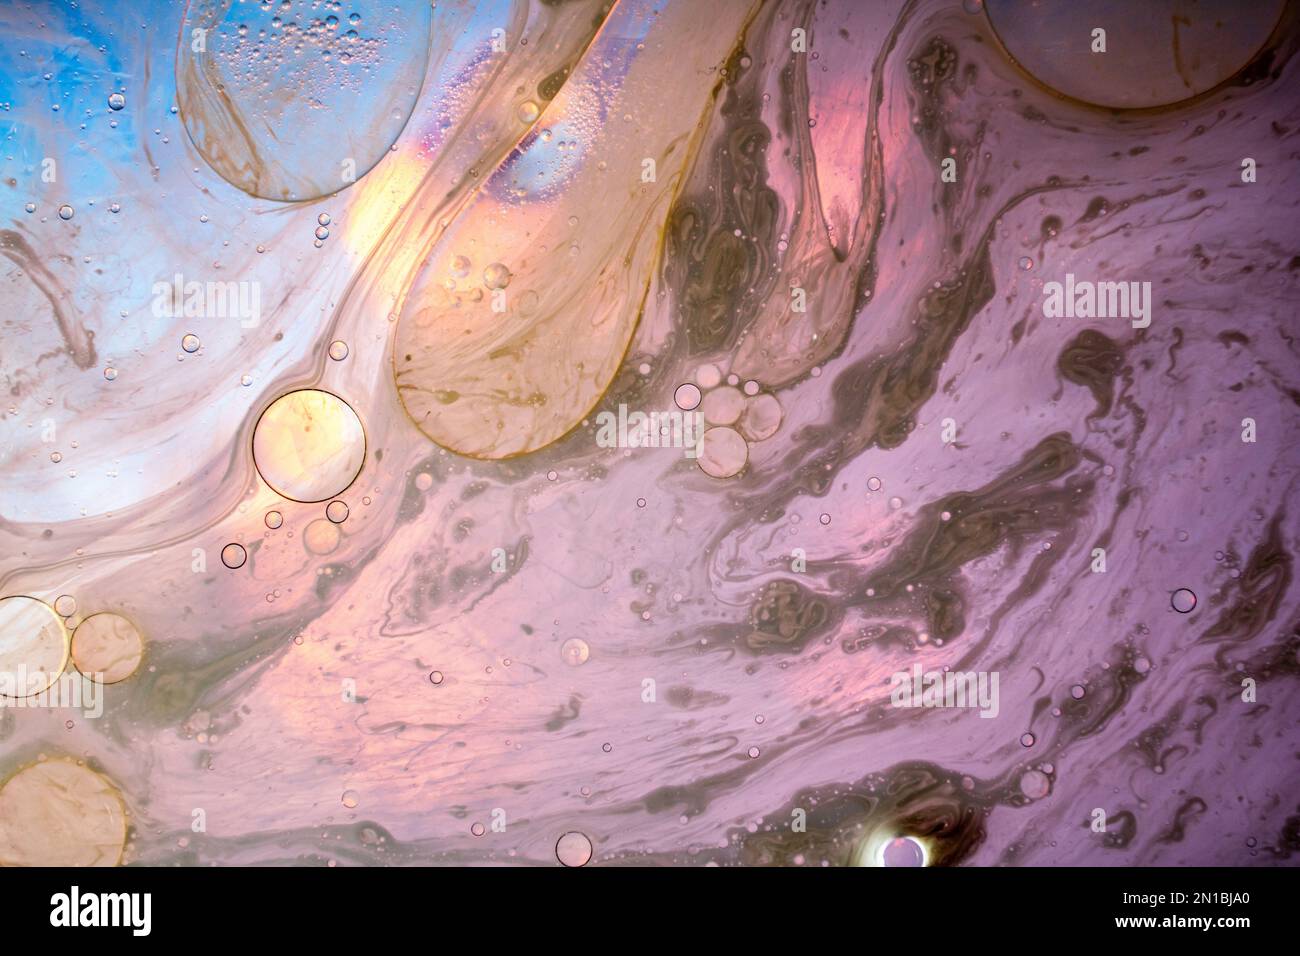 Abstrakter, mehrfarbiger, raumfüllender, verschwommener, verlaufender Hintergrund mit Blasen. Stockfoto